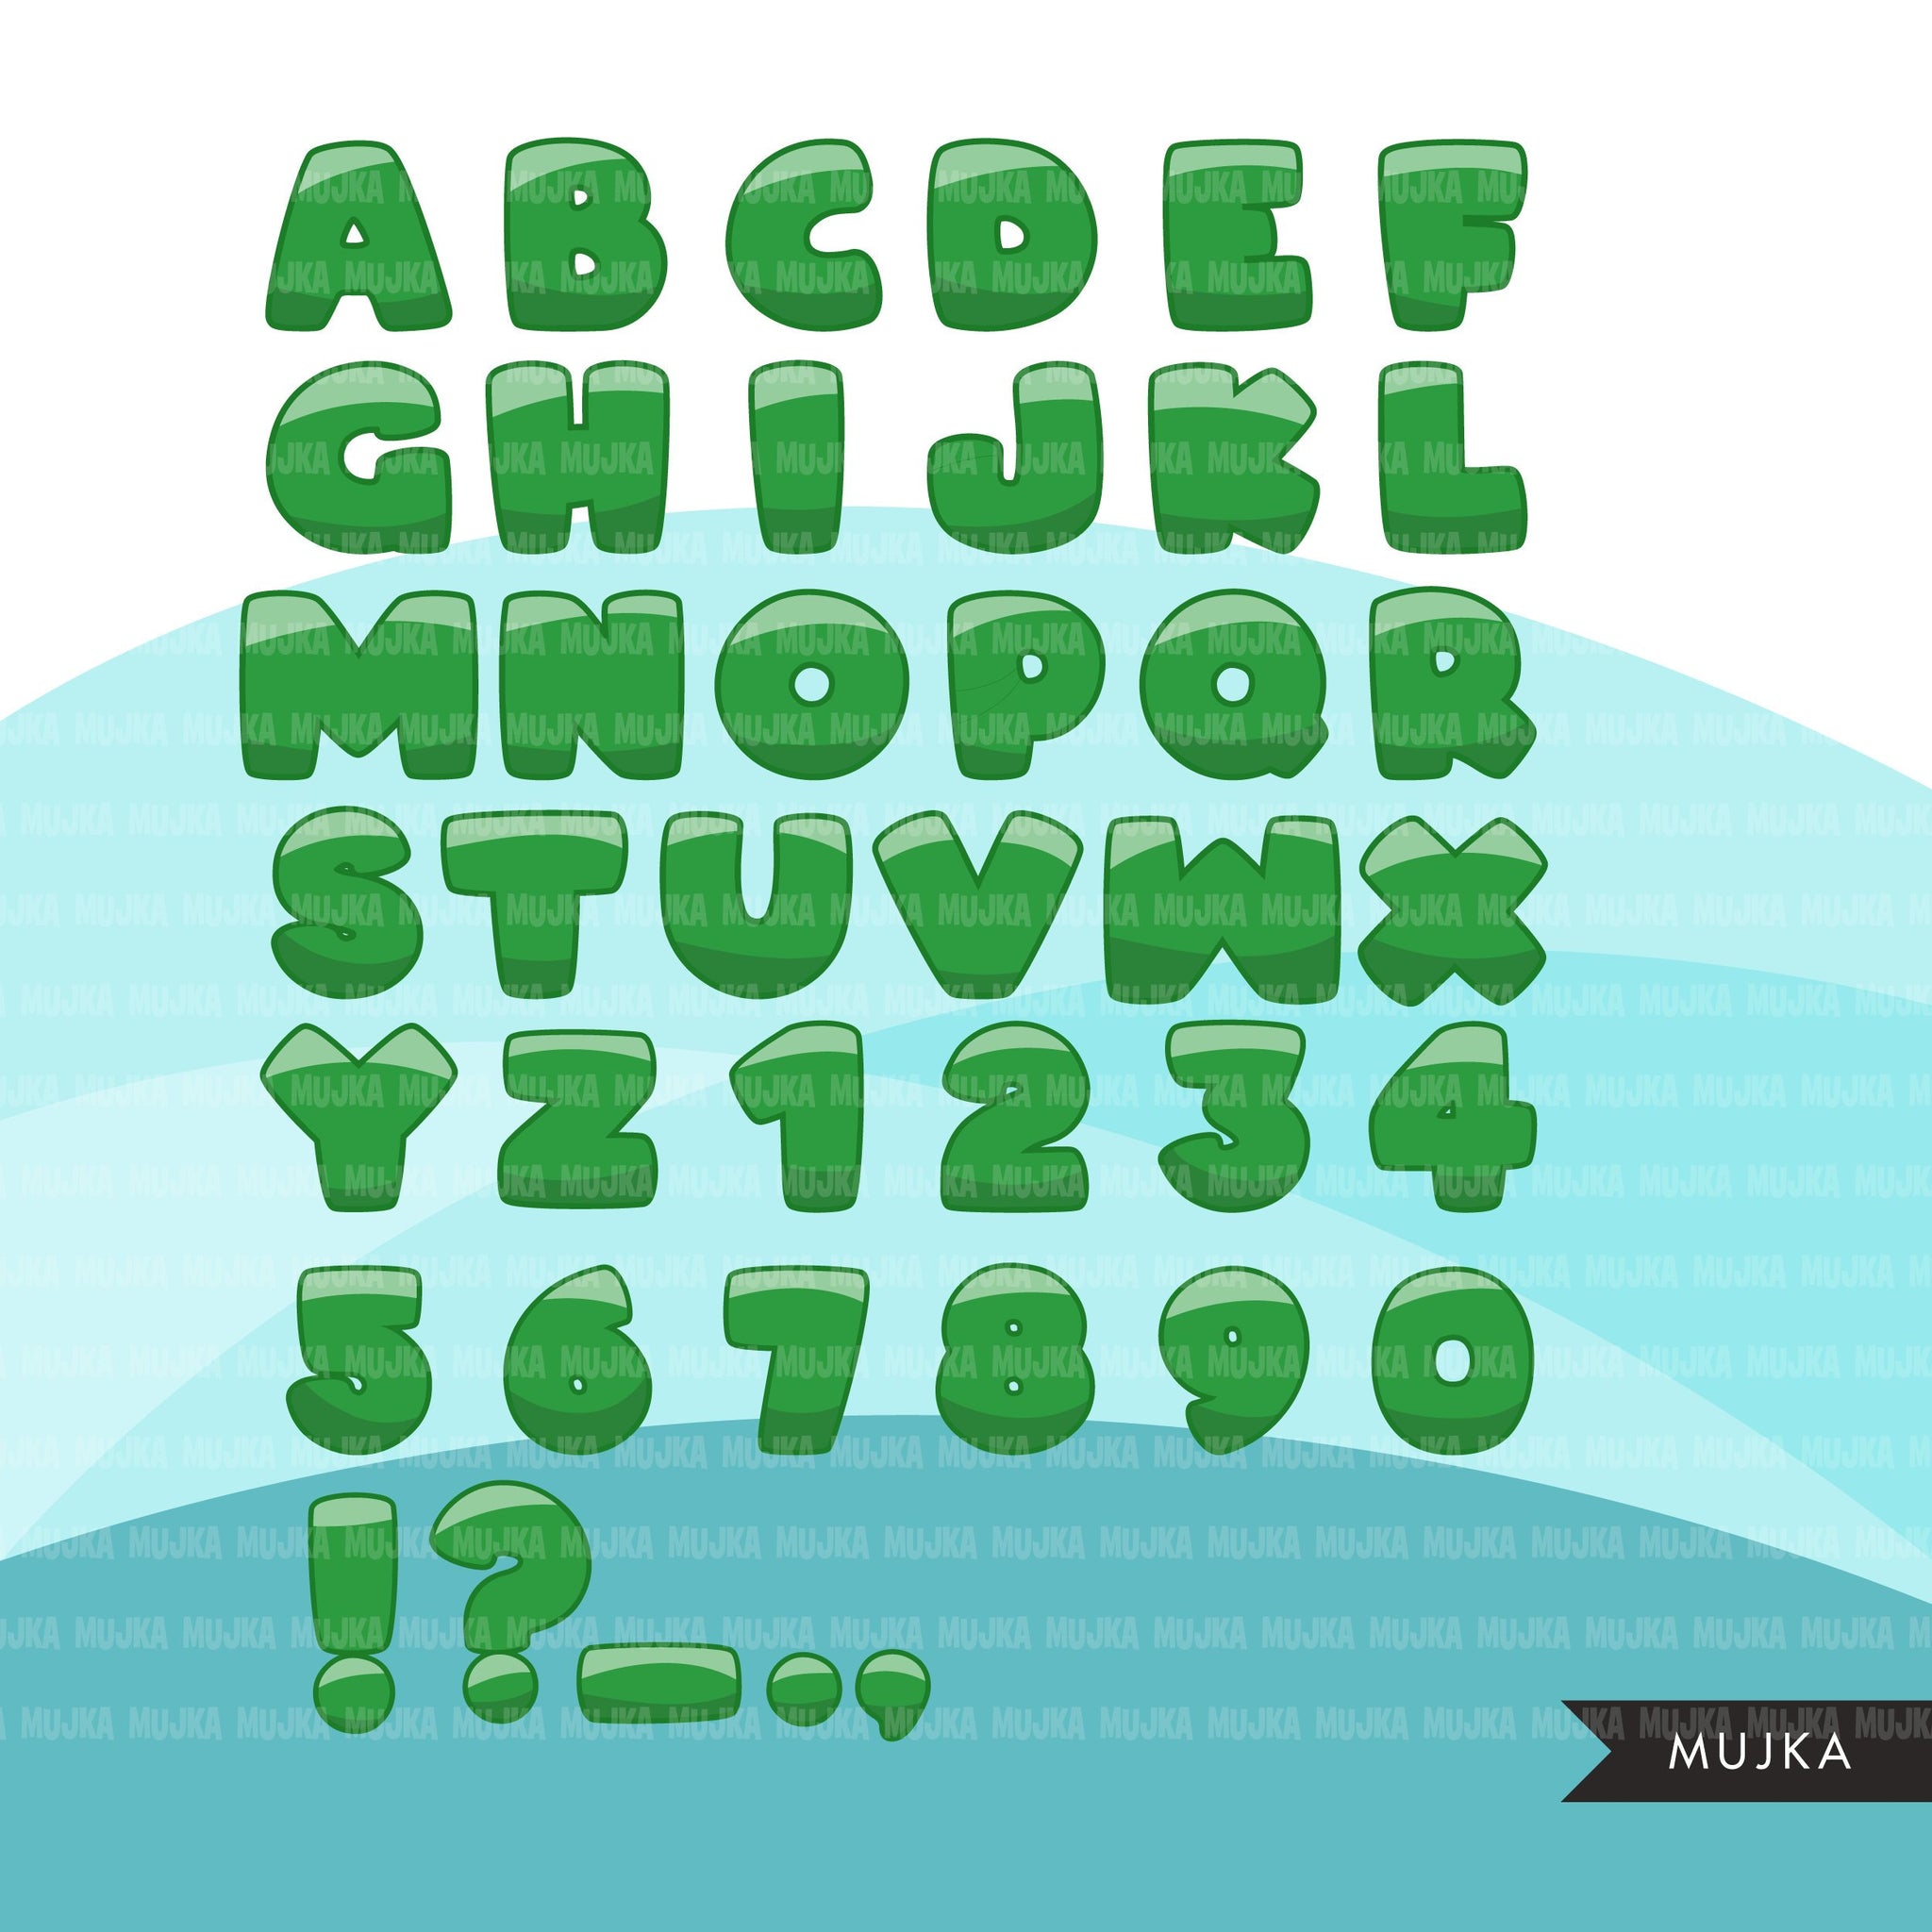 Green Letter S Clip Art - Green Letter S Image